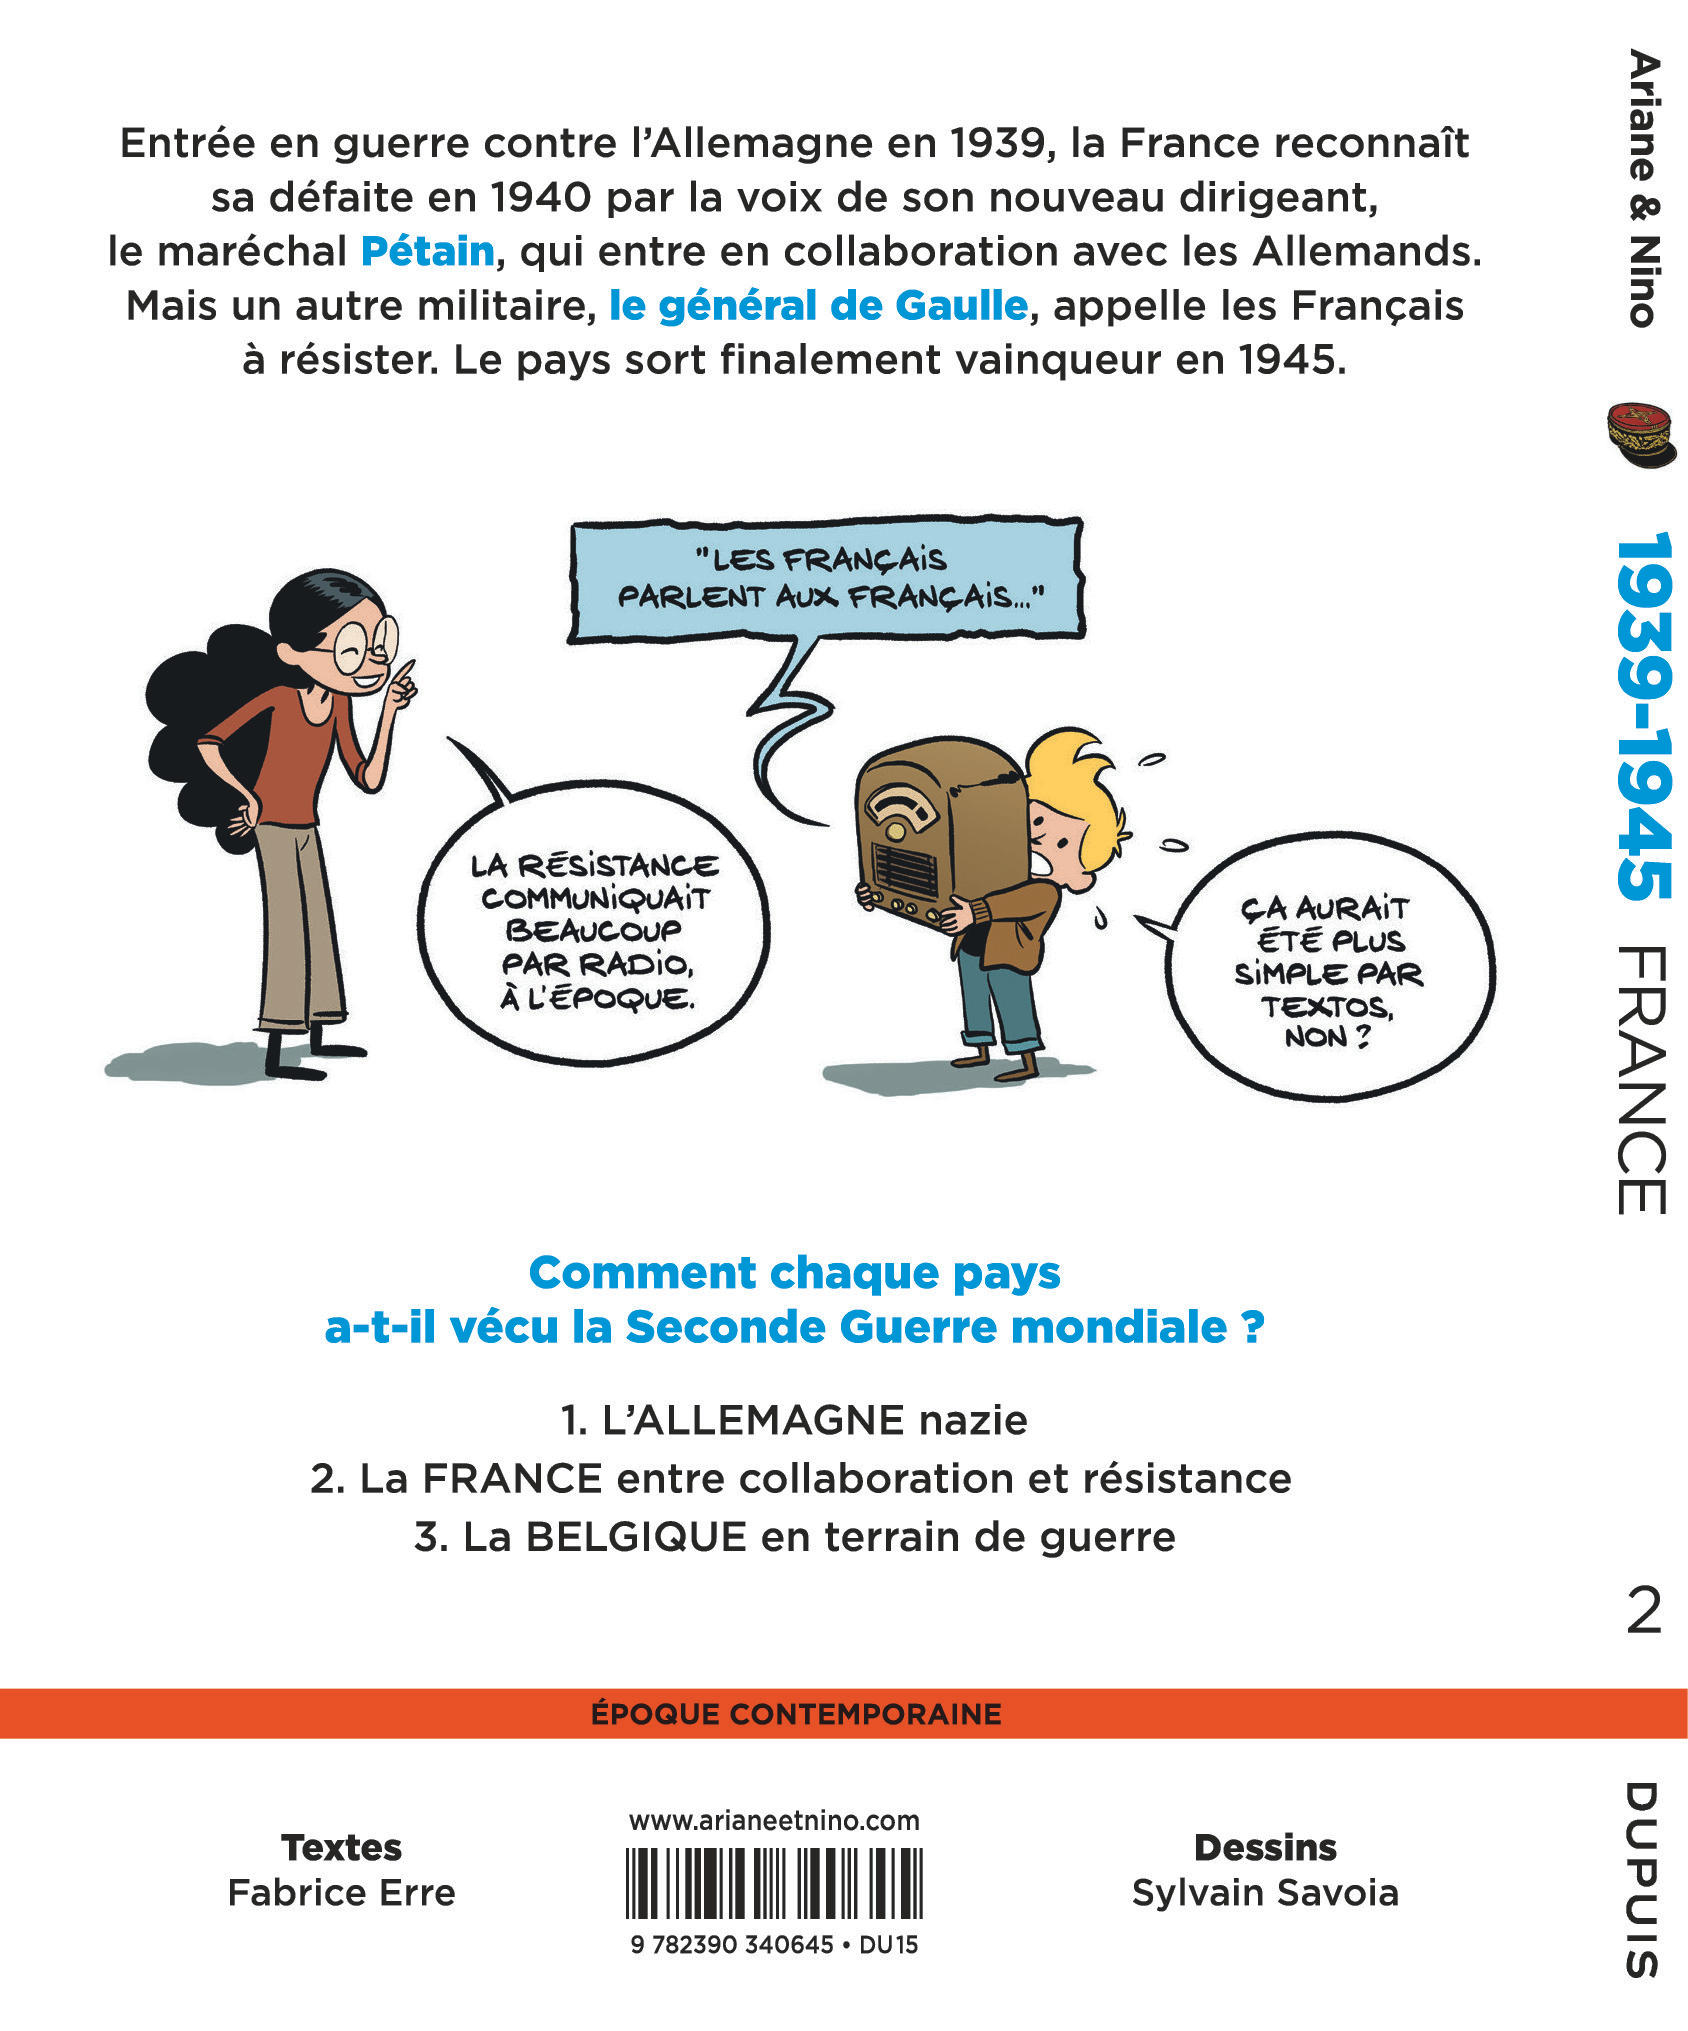 Le fil de l'Histoire raconté par Ariane & Nino – Tome 21 – 1939-1945 - La France entre collaboration et résistance - 4eme